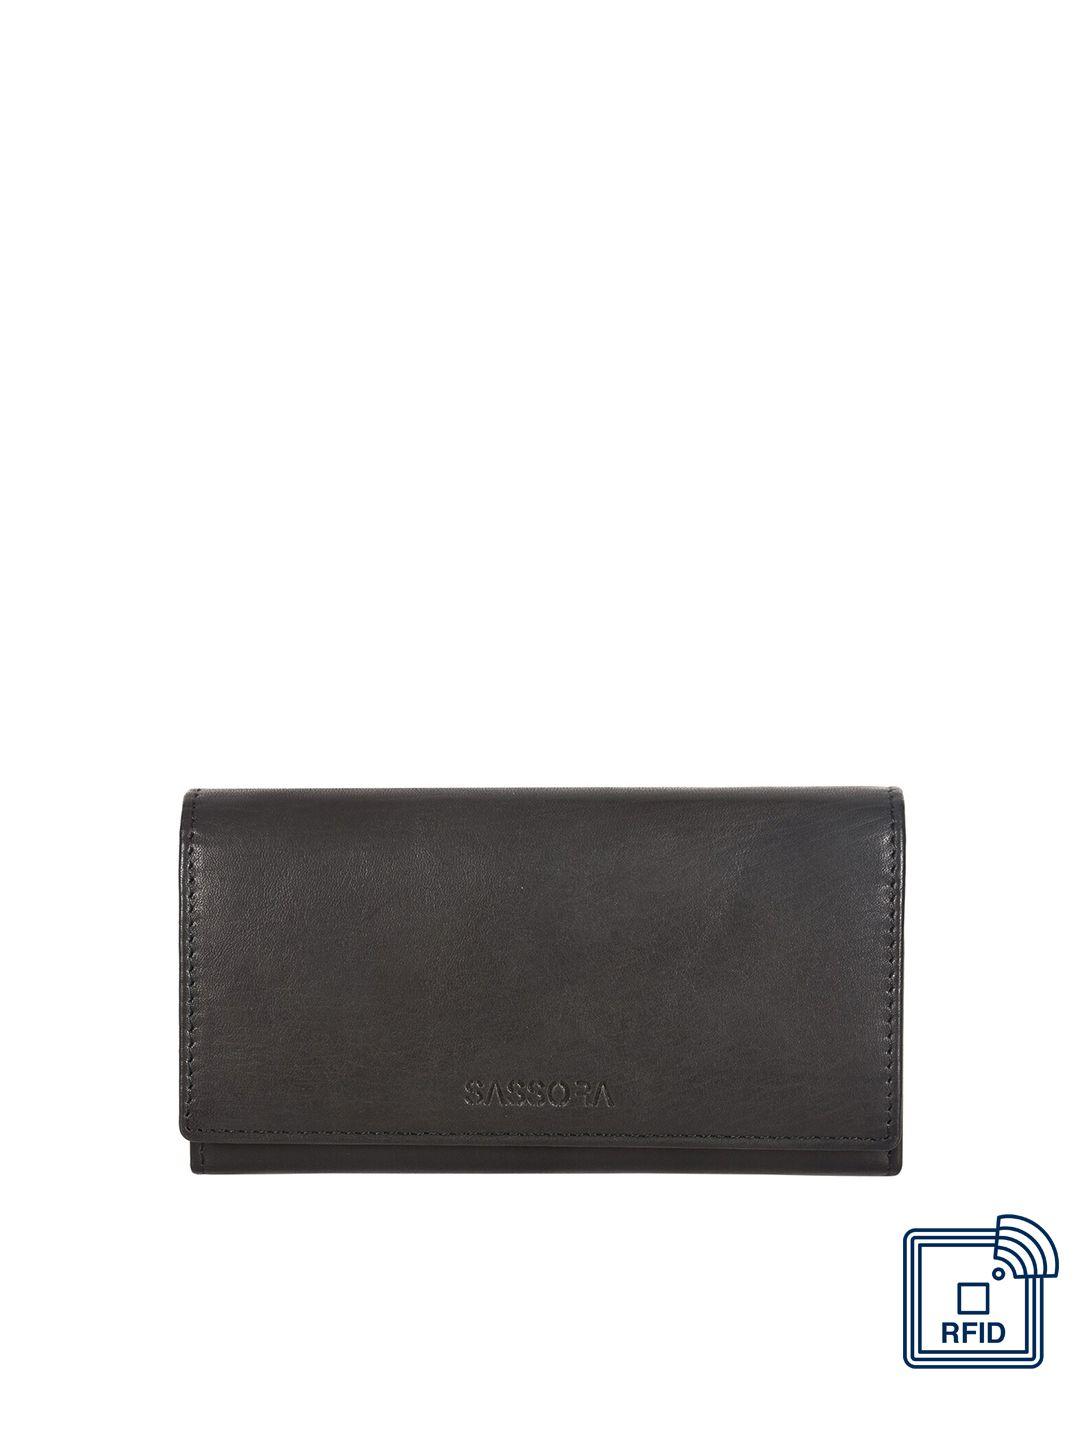 sassora women leather two fold wallet